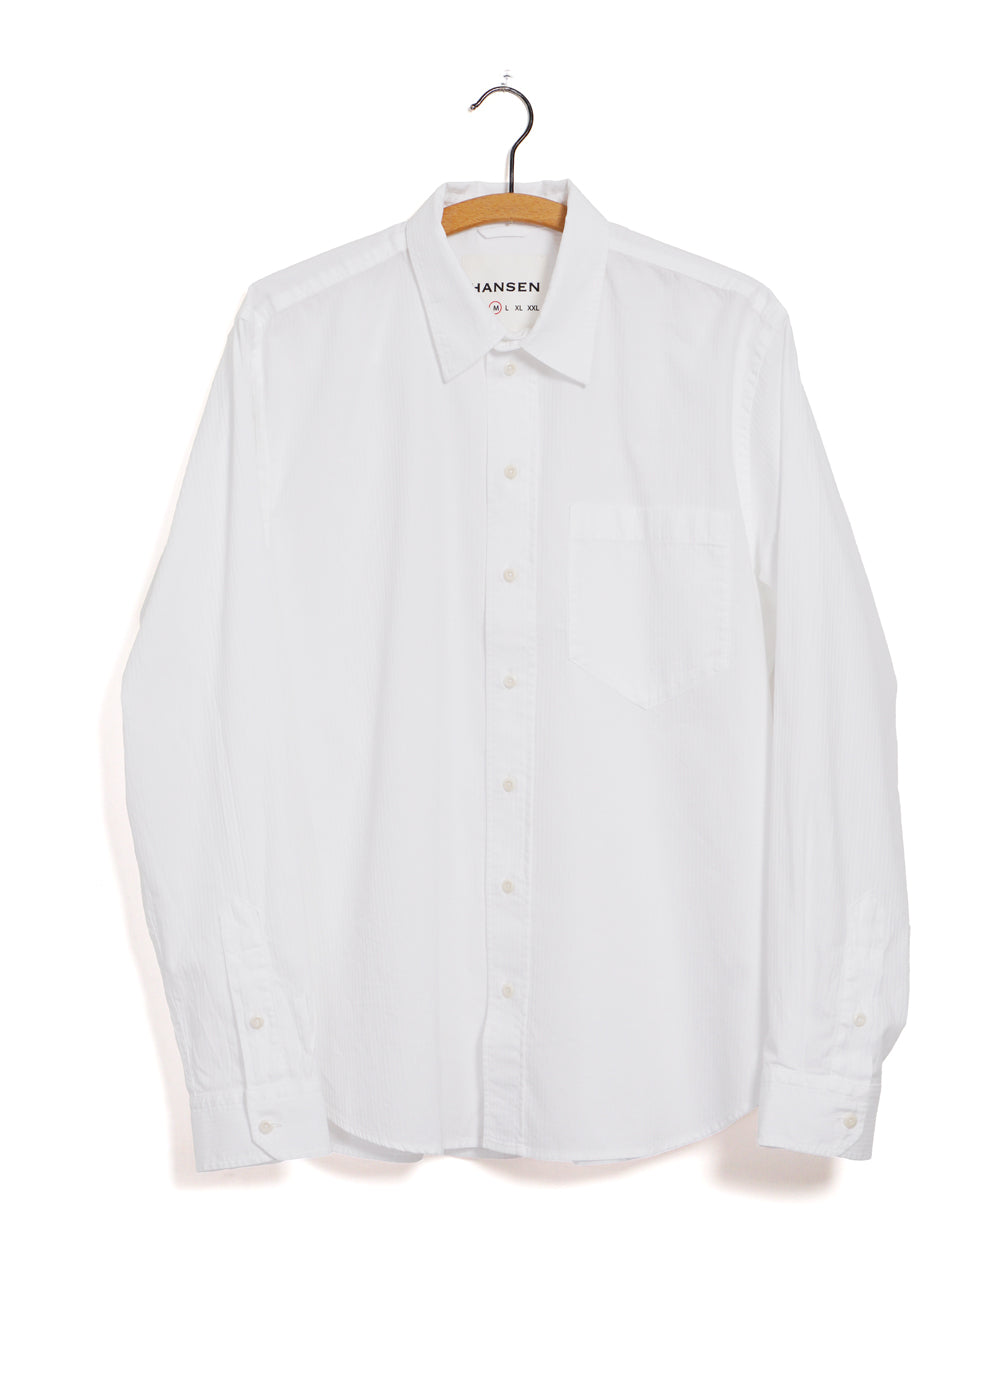 RAYMOND | Relaxed Classic Herringbone Shirt | White